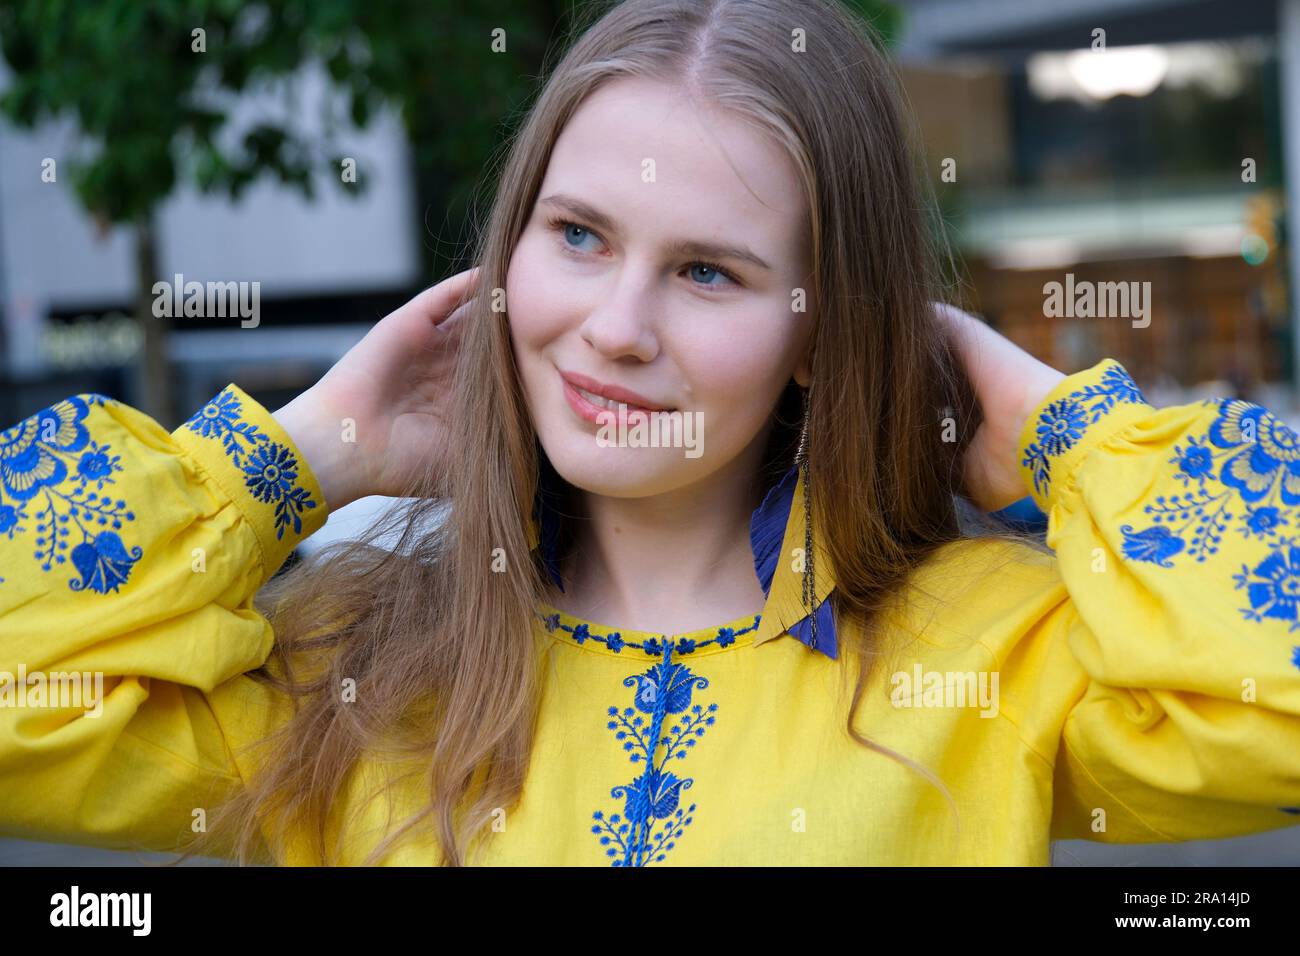 Le mani di una giovane ragazza reggono la bandiera Ucraina. Una ragazza con una camicia ricamata. Ucraina libera. Foto di alta qualità Foto Stock